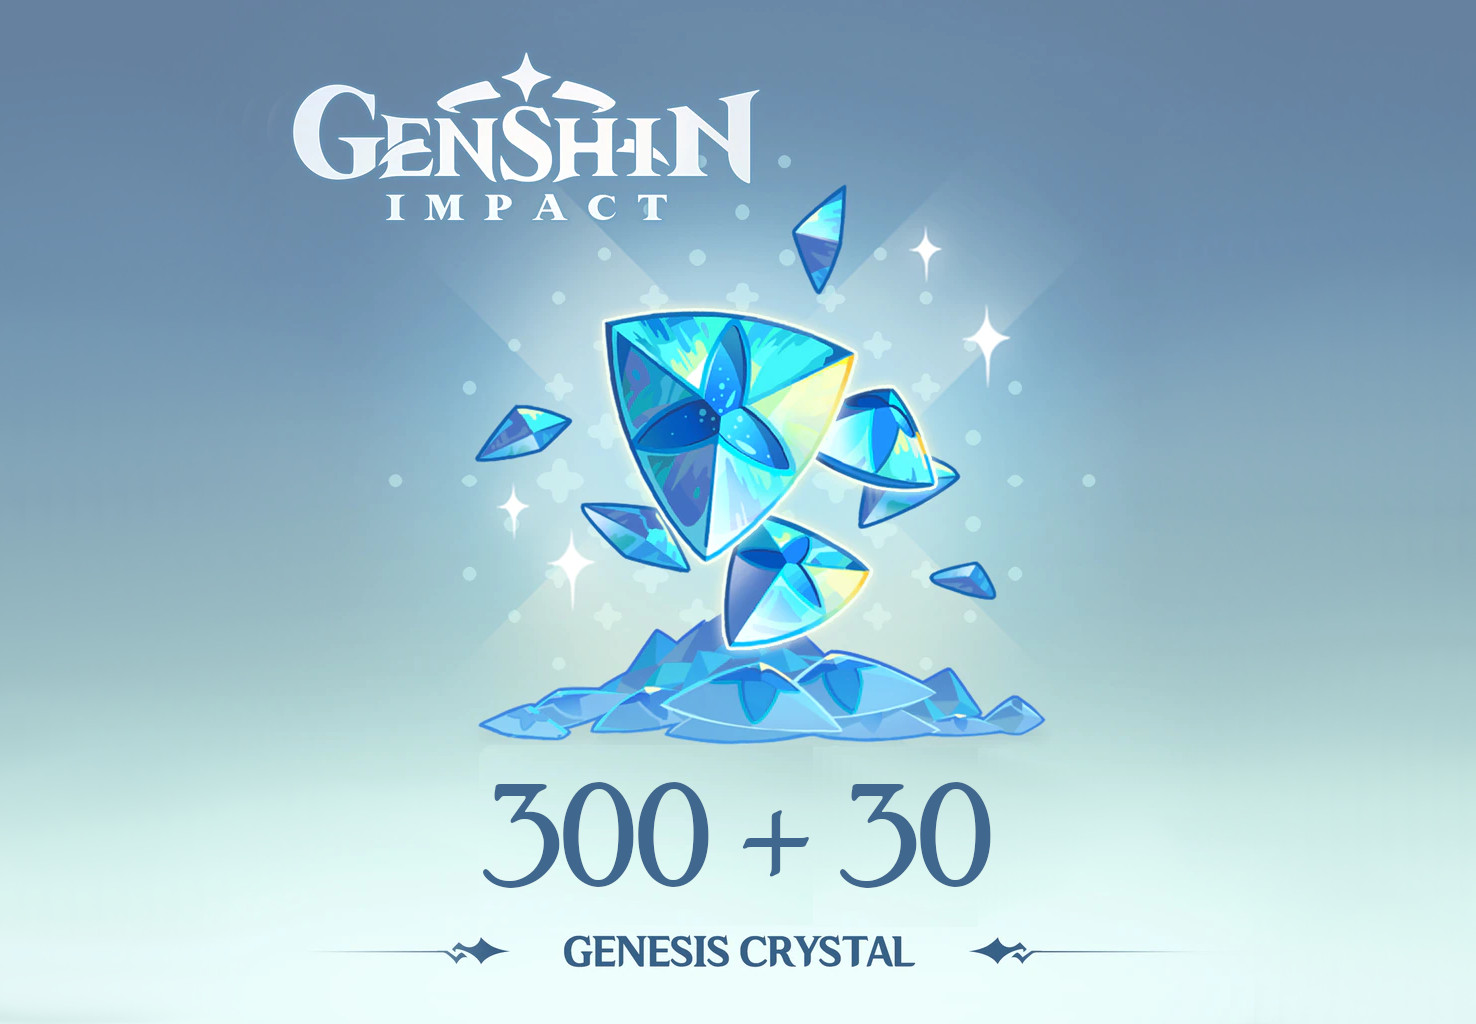 Genshin Impact - 300 + 30 Genesis Crystals Reidos Voucher, 5.37 usd